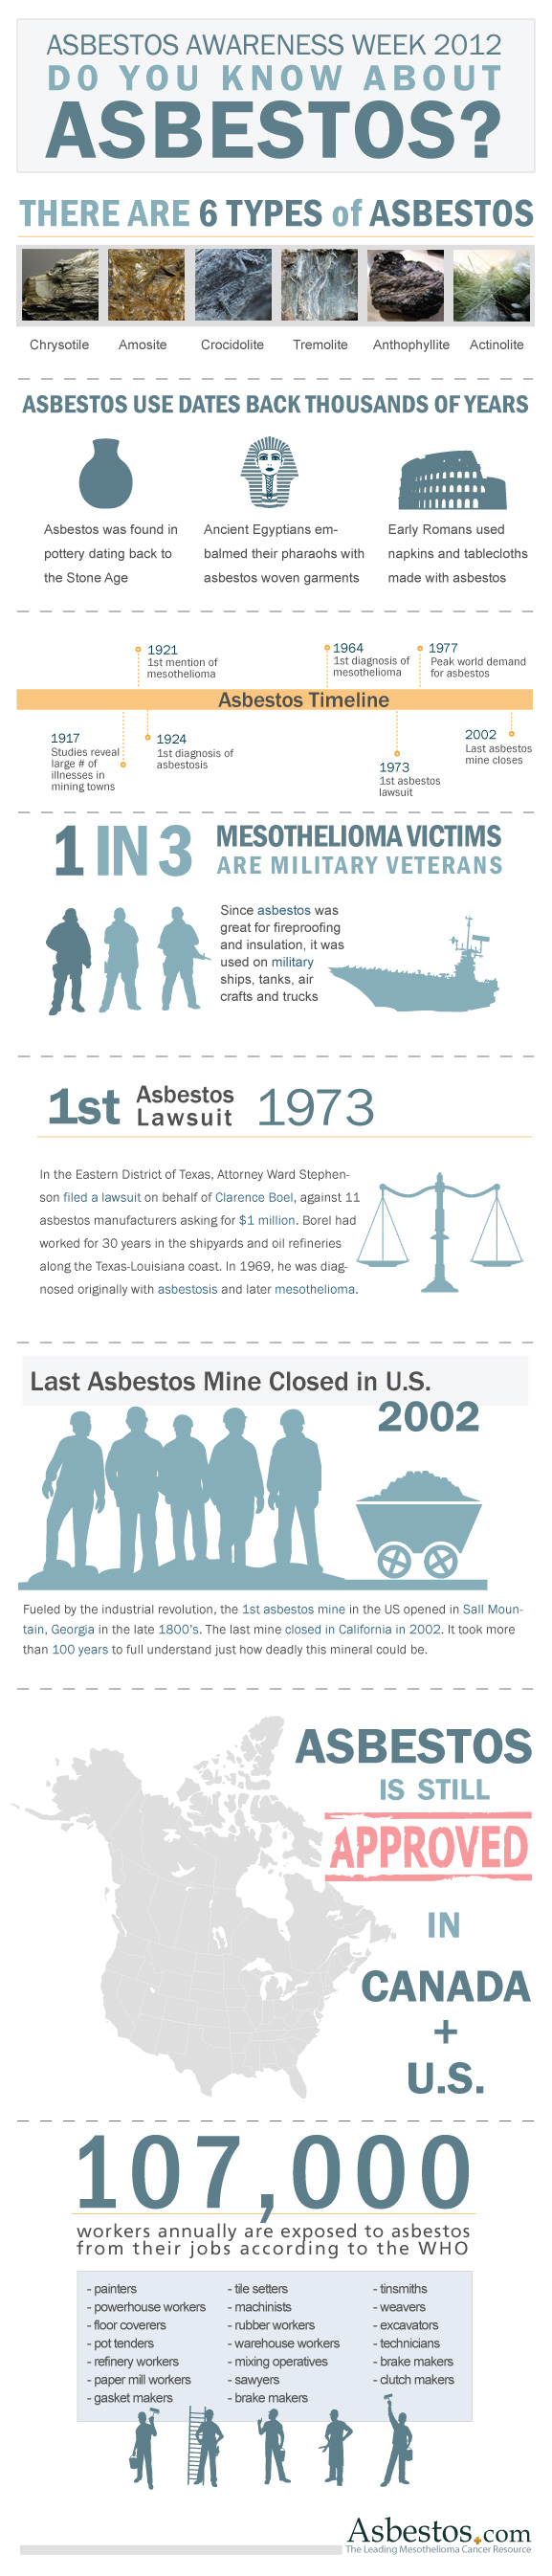 Asbestos 2012 infographic